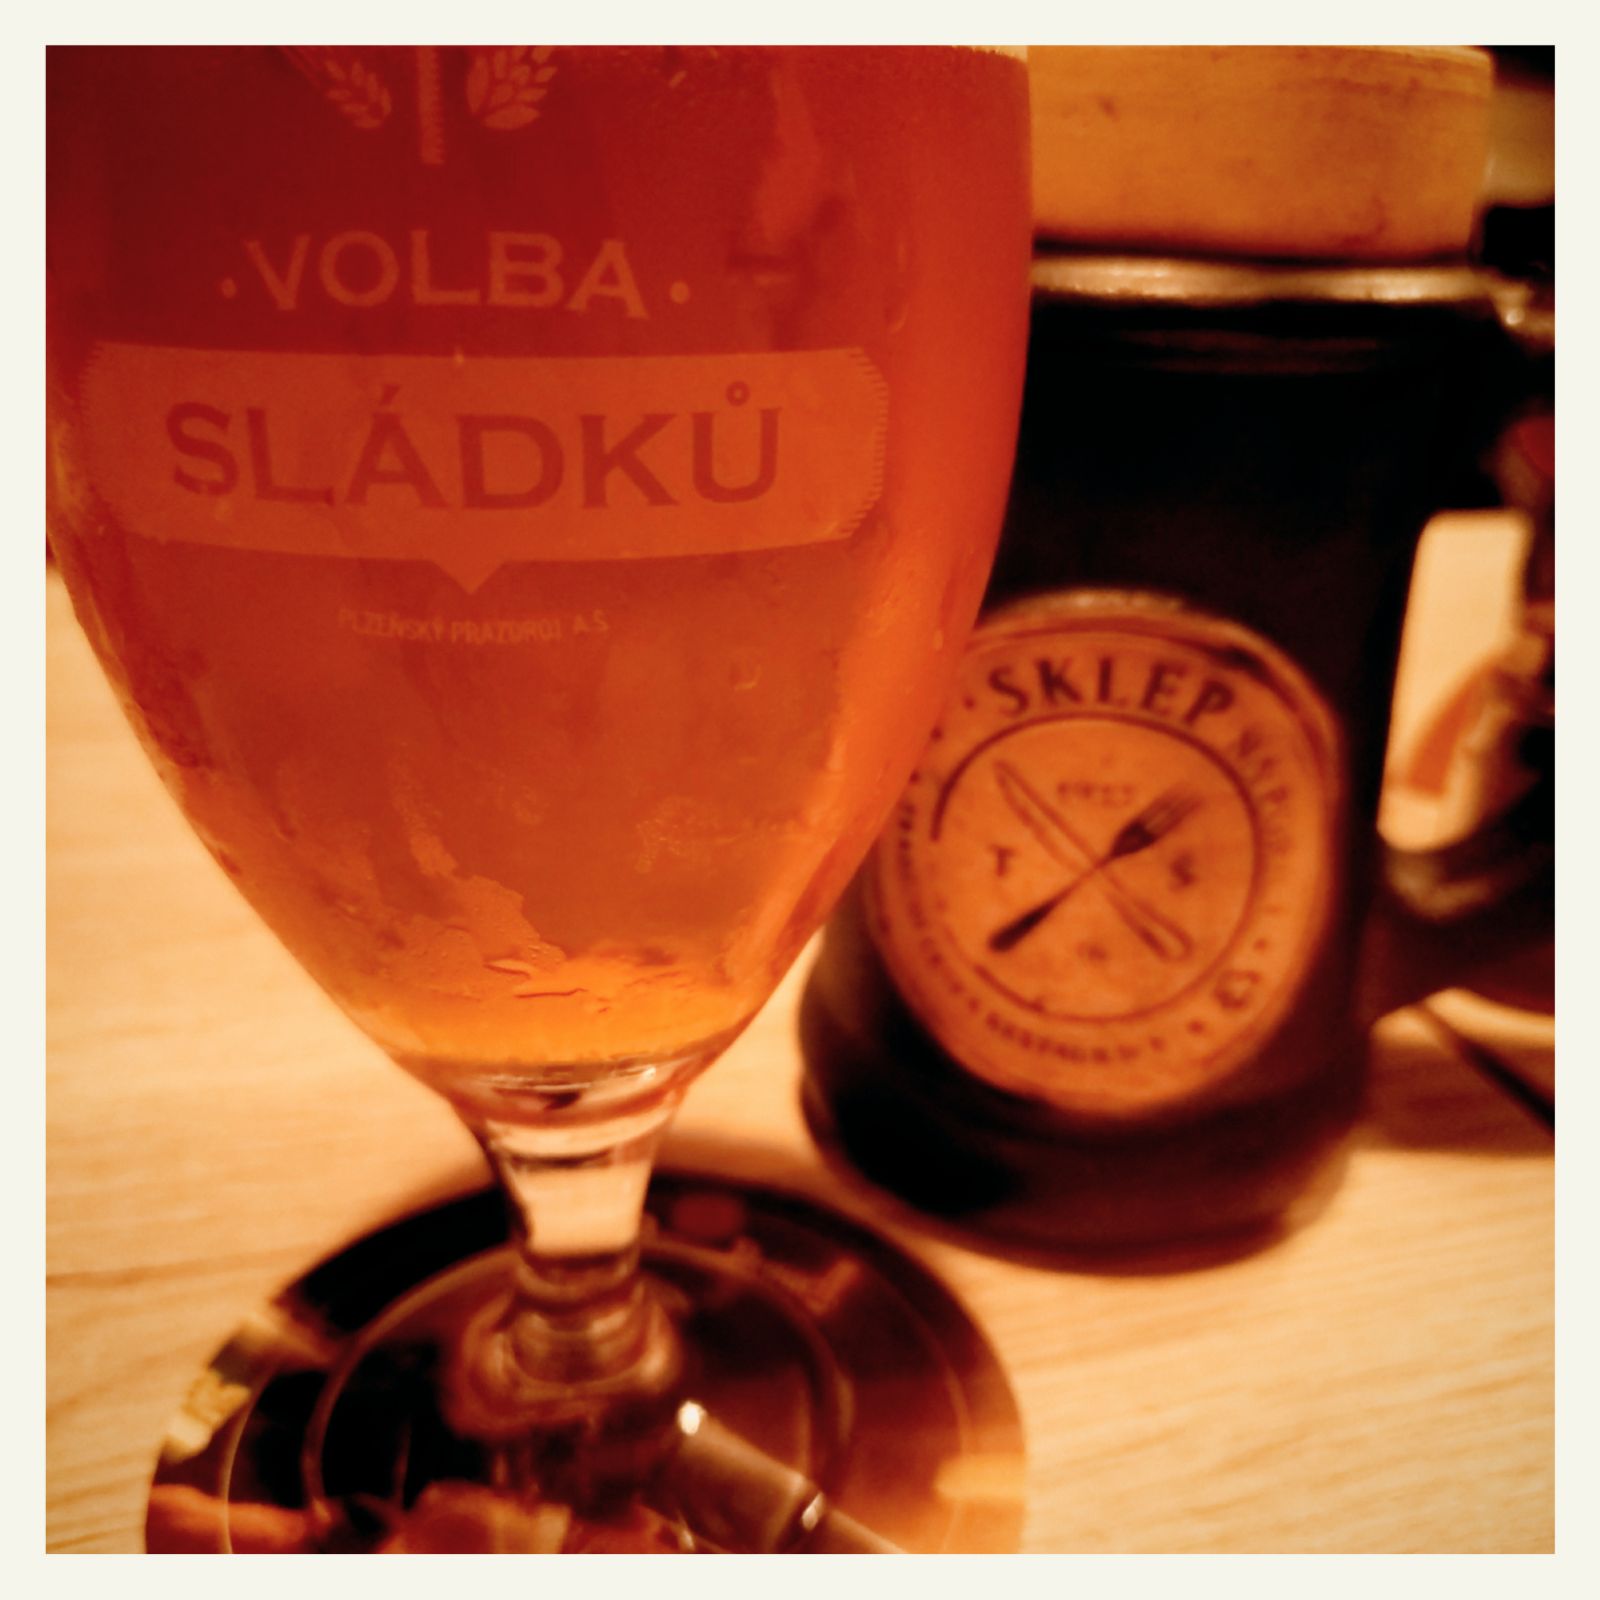 Sladku beer, and a might of Sklep restaurant behind.